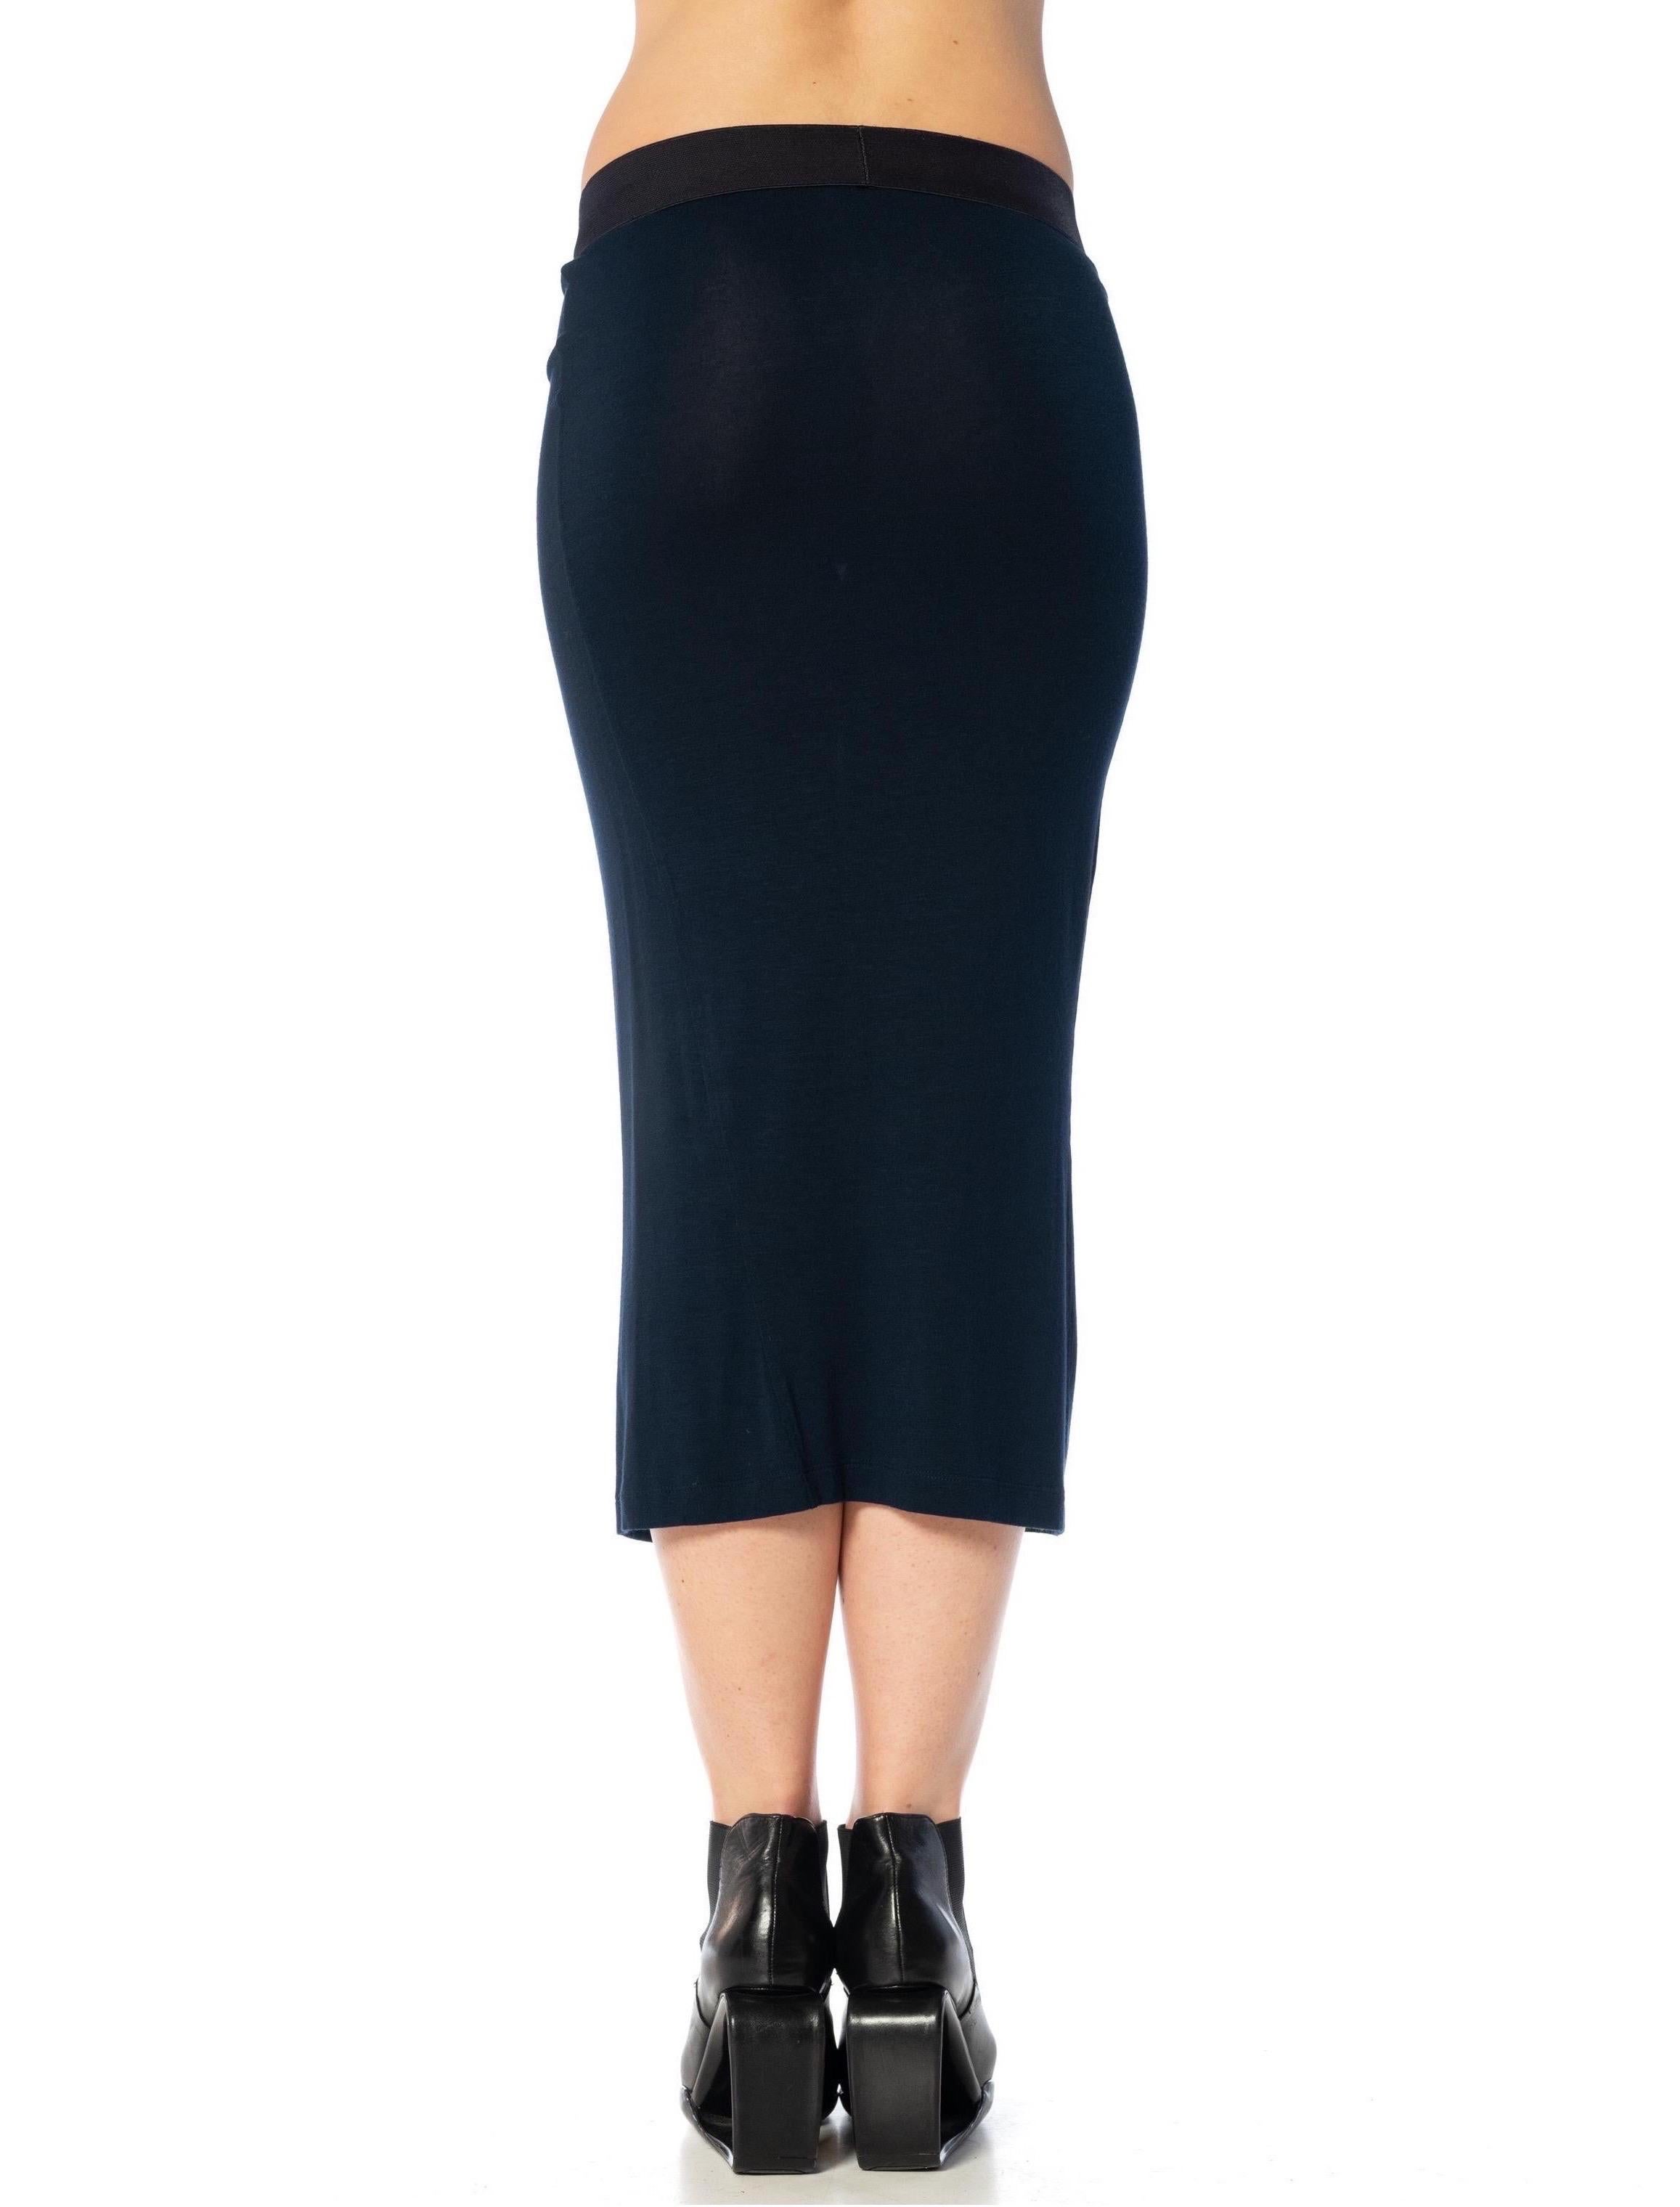 DONNA KARAN, jupe en rayonne bleu nuit avec ceinture élastique épaisse, années 2000 en vente 3